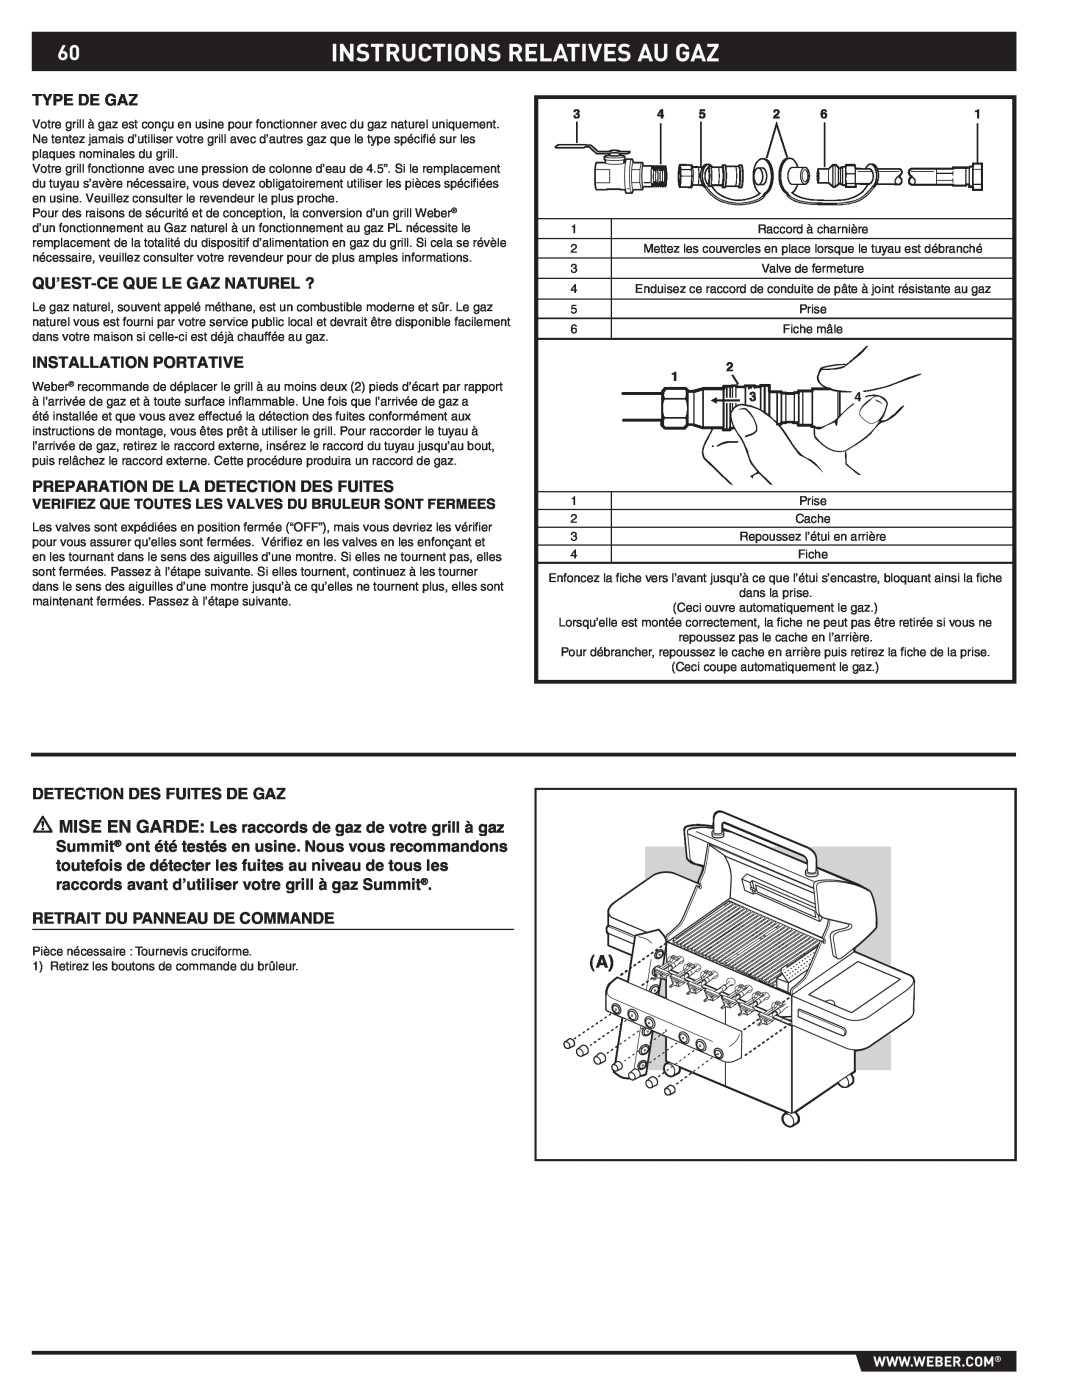 Weber S-470TM manual Instructions Relatives Au Gaz, Type De Gaz, Qu’Est-Ce Que Le Gaz Naturel ?, Installation Portative 